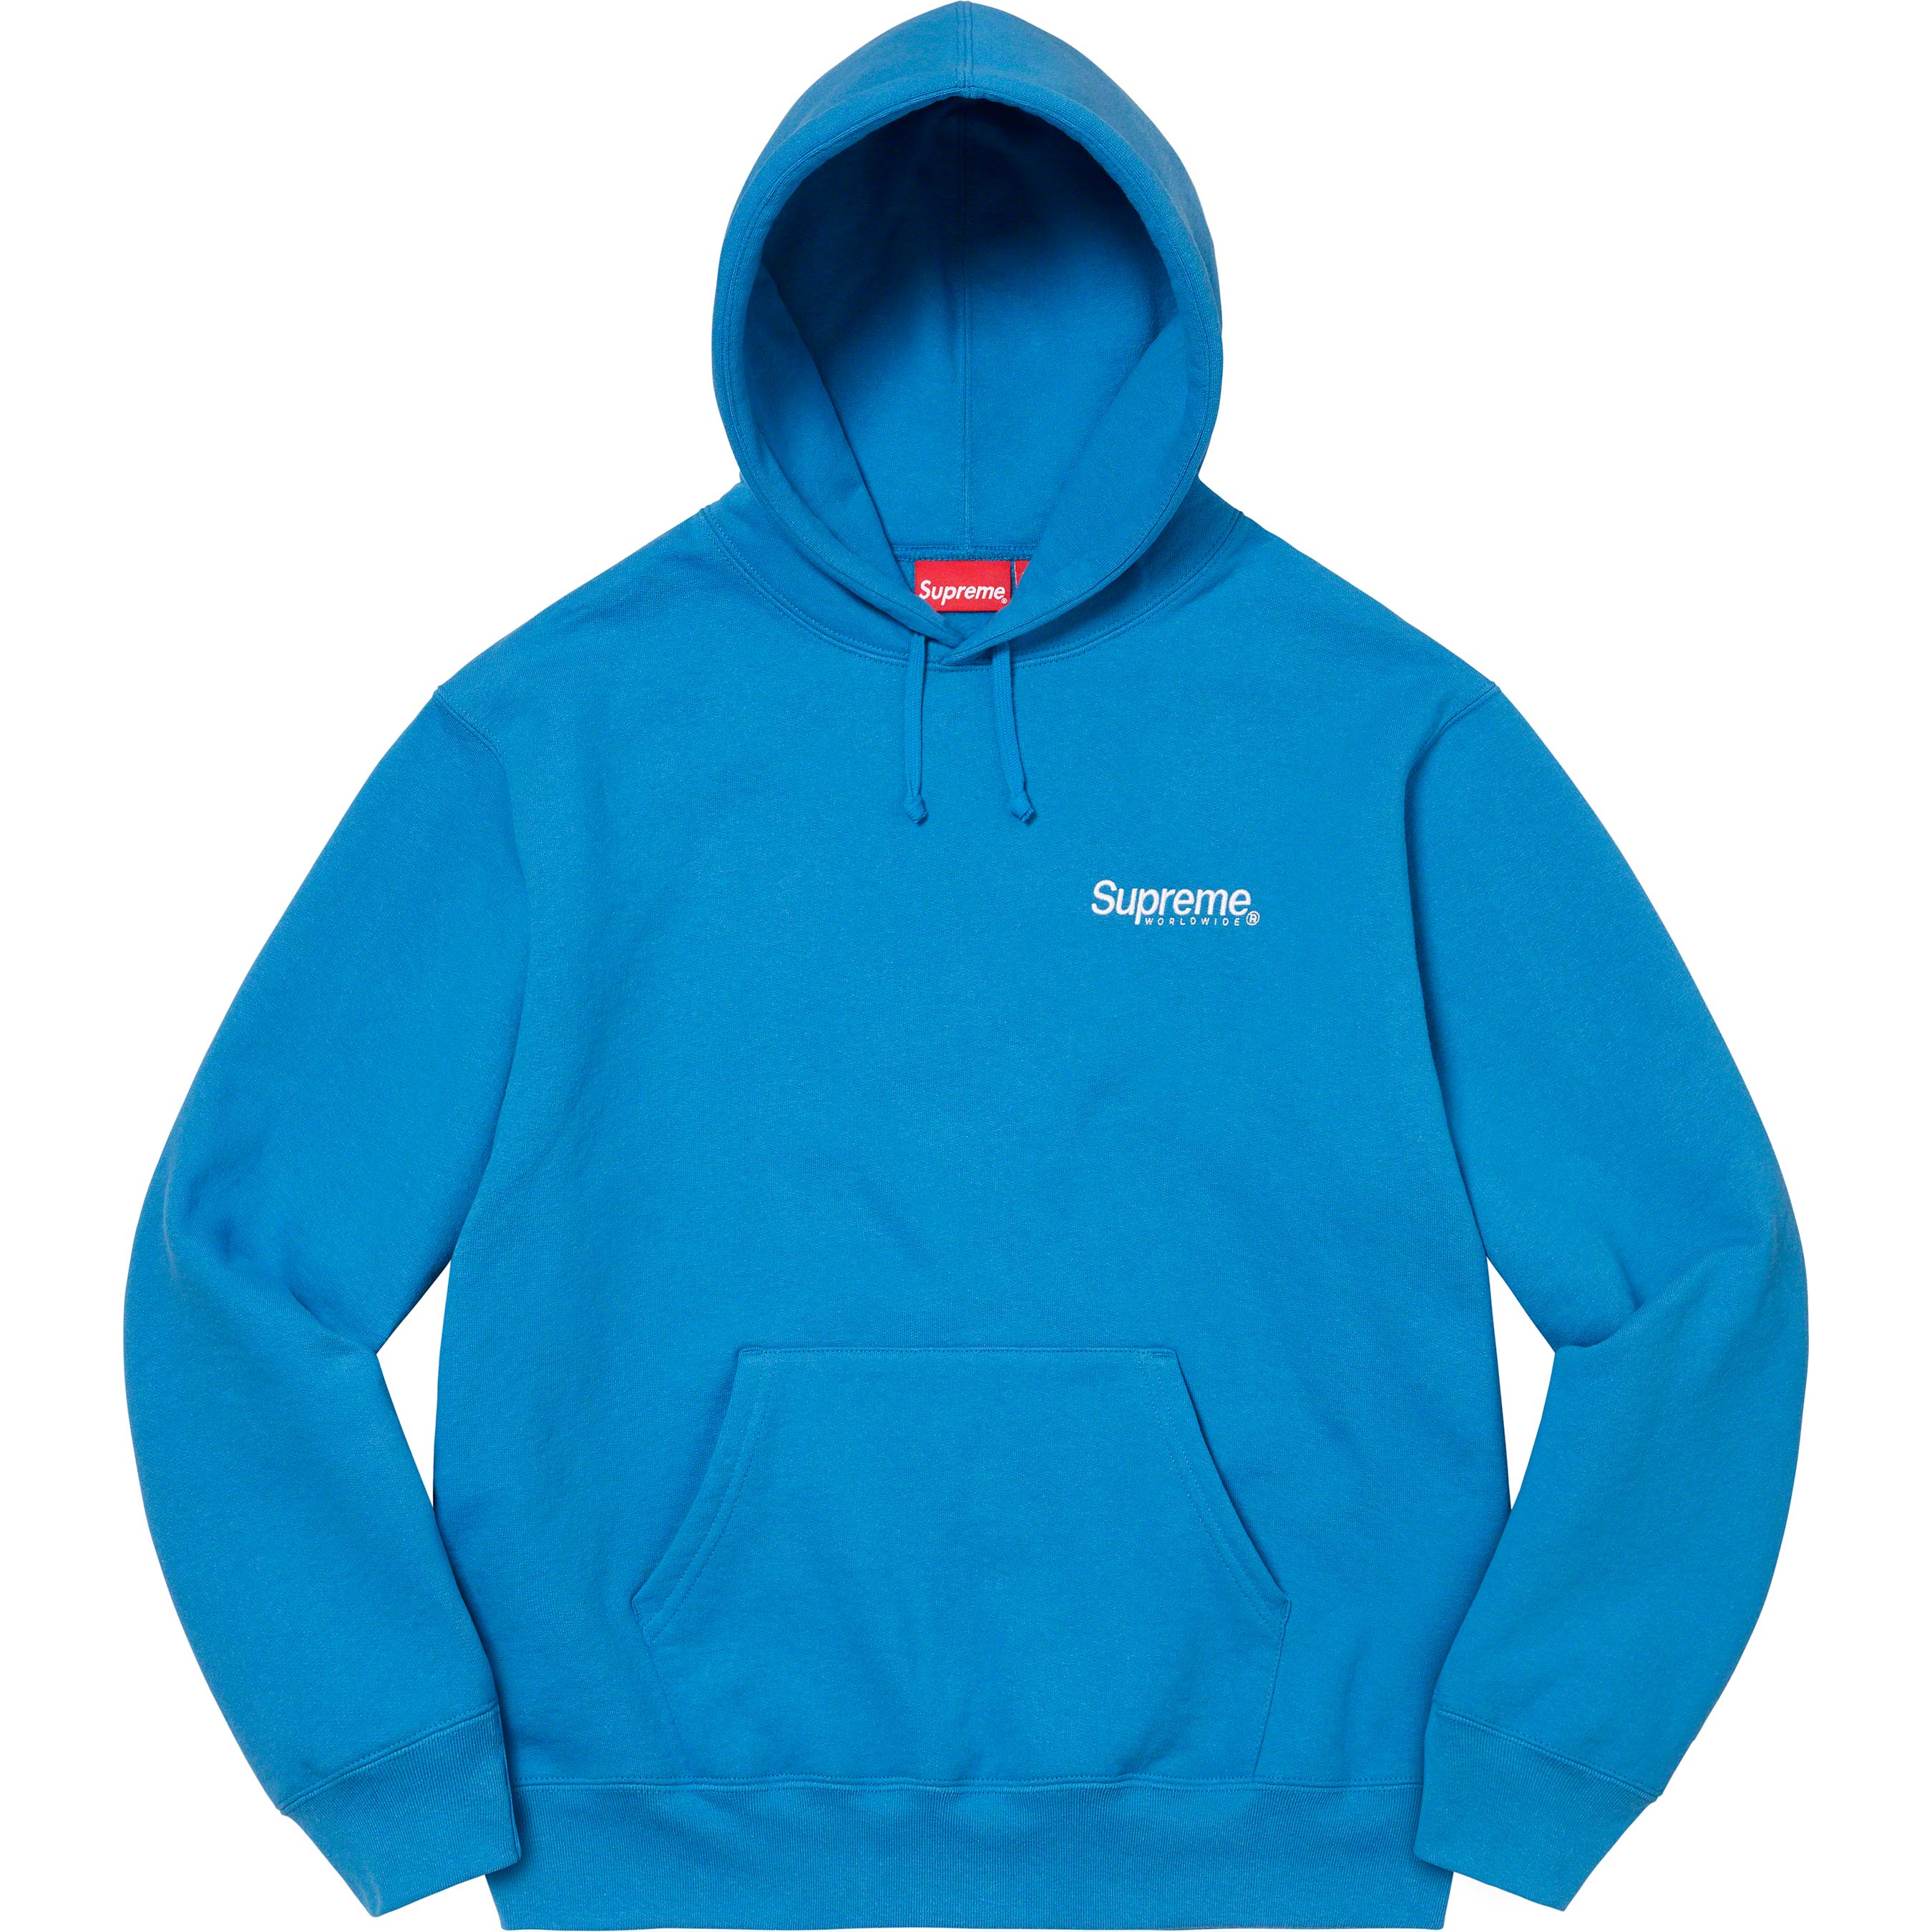 Supreme Worldwide Hooded Sweatshirt Blue-